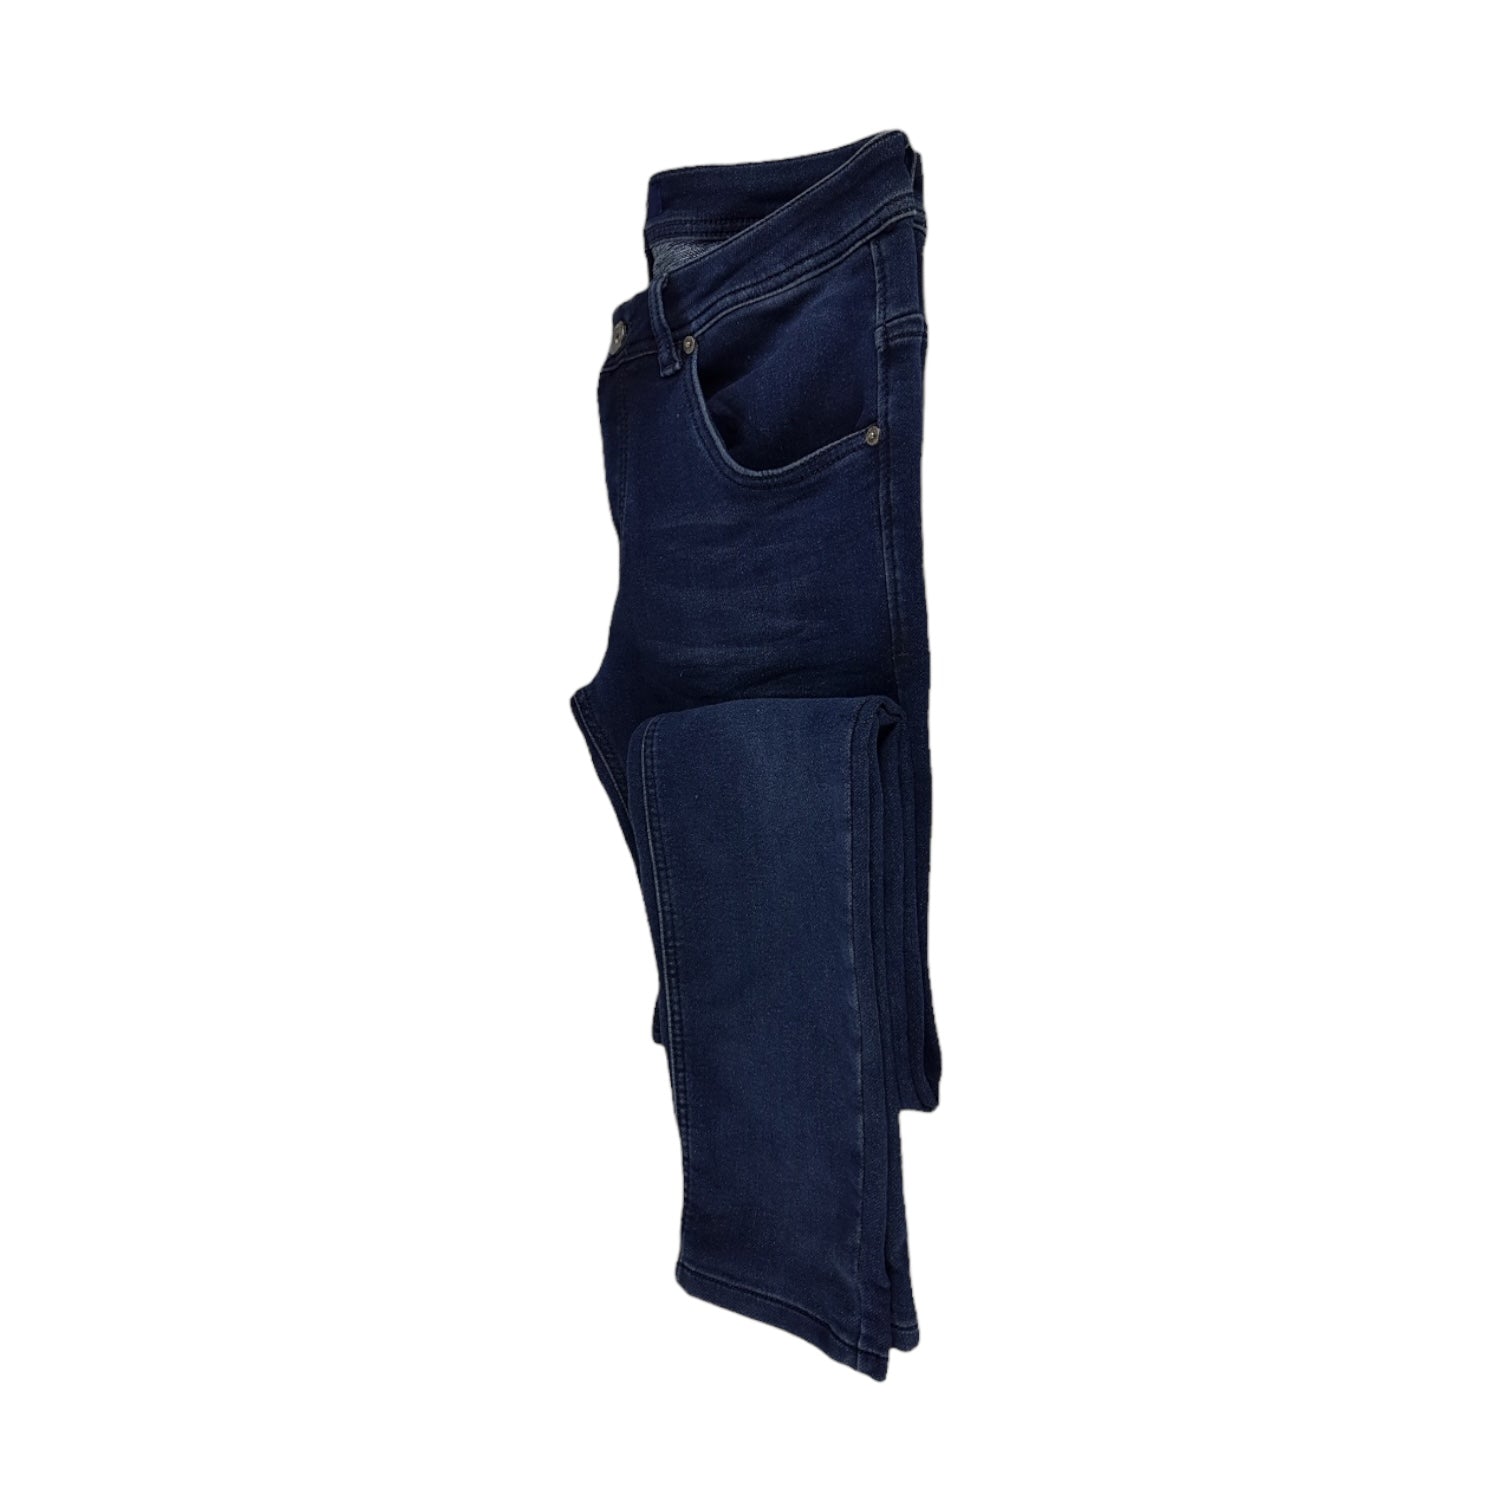 Jeans Ganga Escura | Acexarme. Mais modelos Jeans Homem disponíveis.